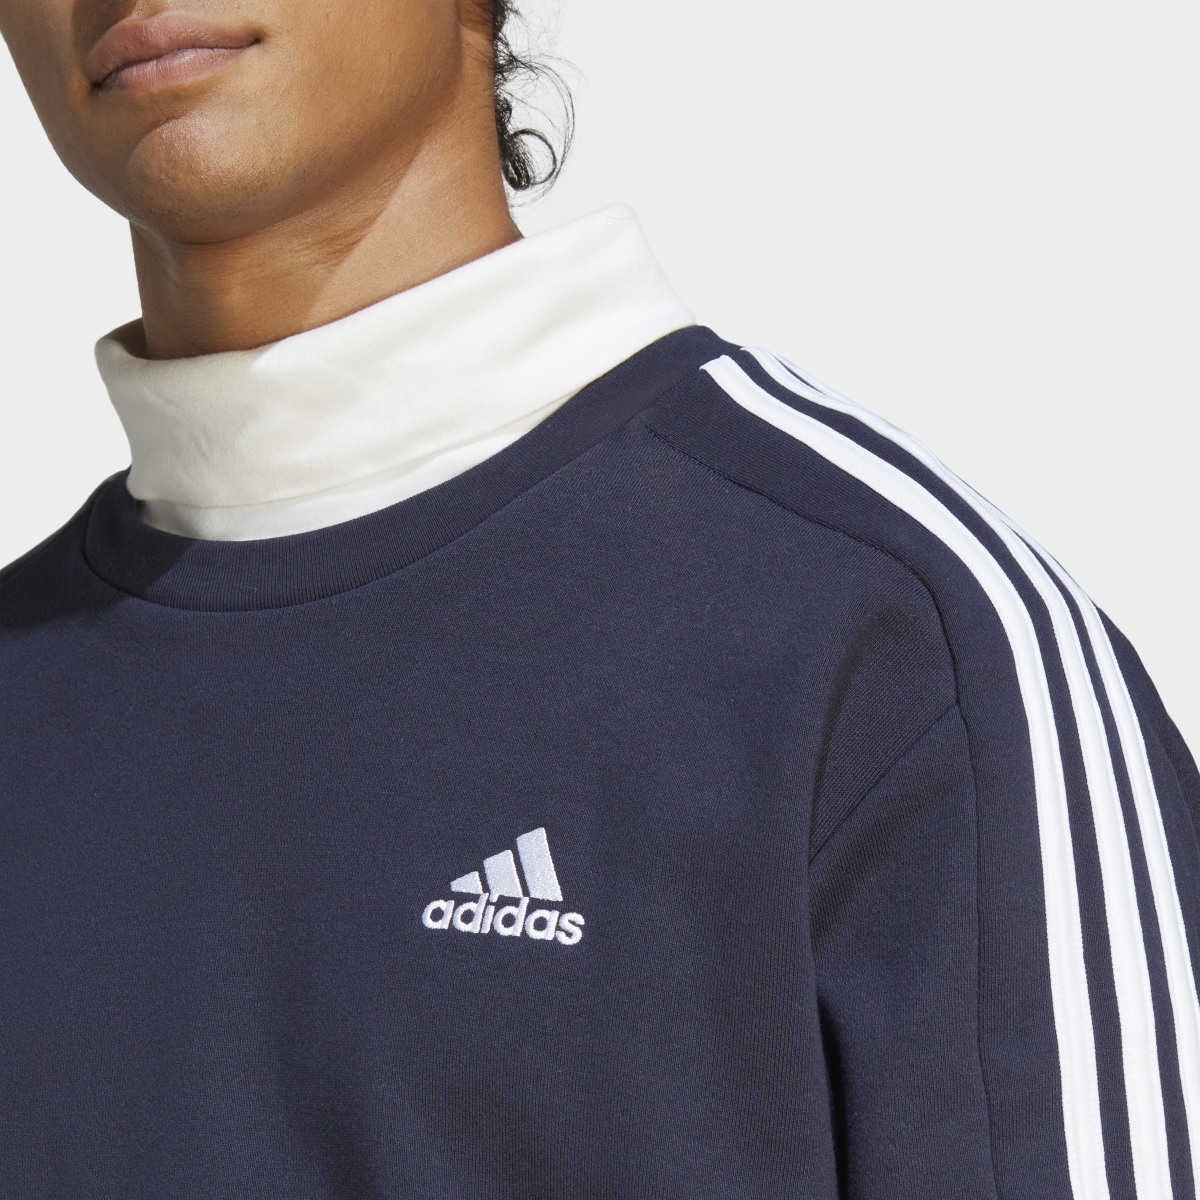 Adidas Essentials French Terry 3-Streifen Sweatshirt. 6